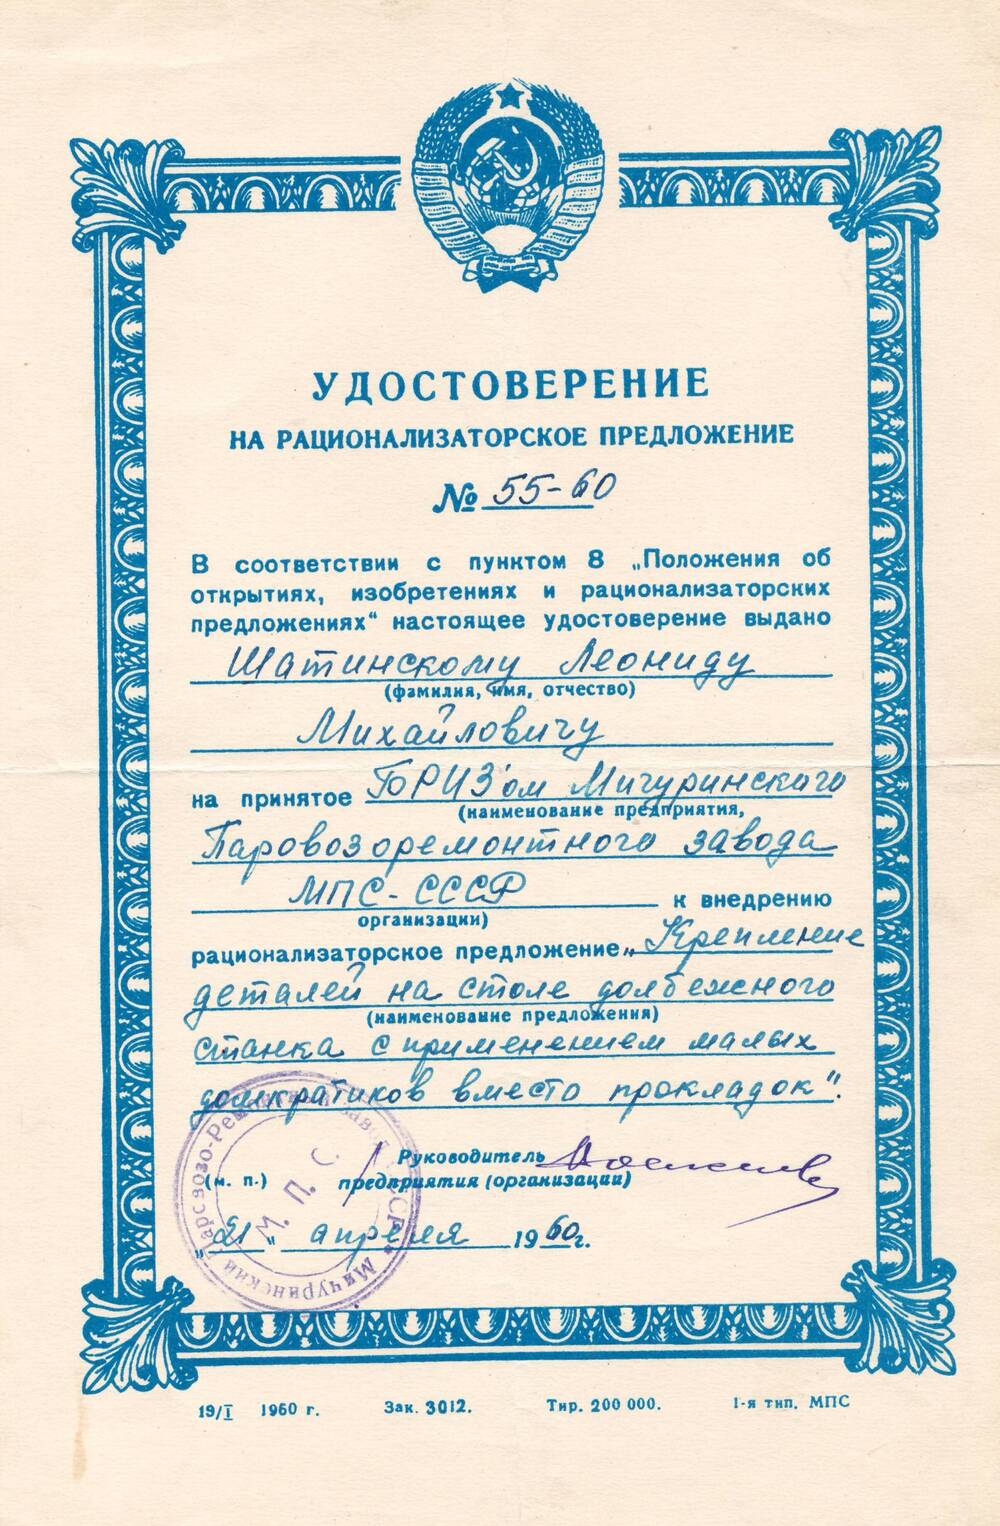 Удостоверение на рационализаторское предложение №55-60, выданное Шатинскому Леониду Михайловичу